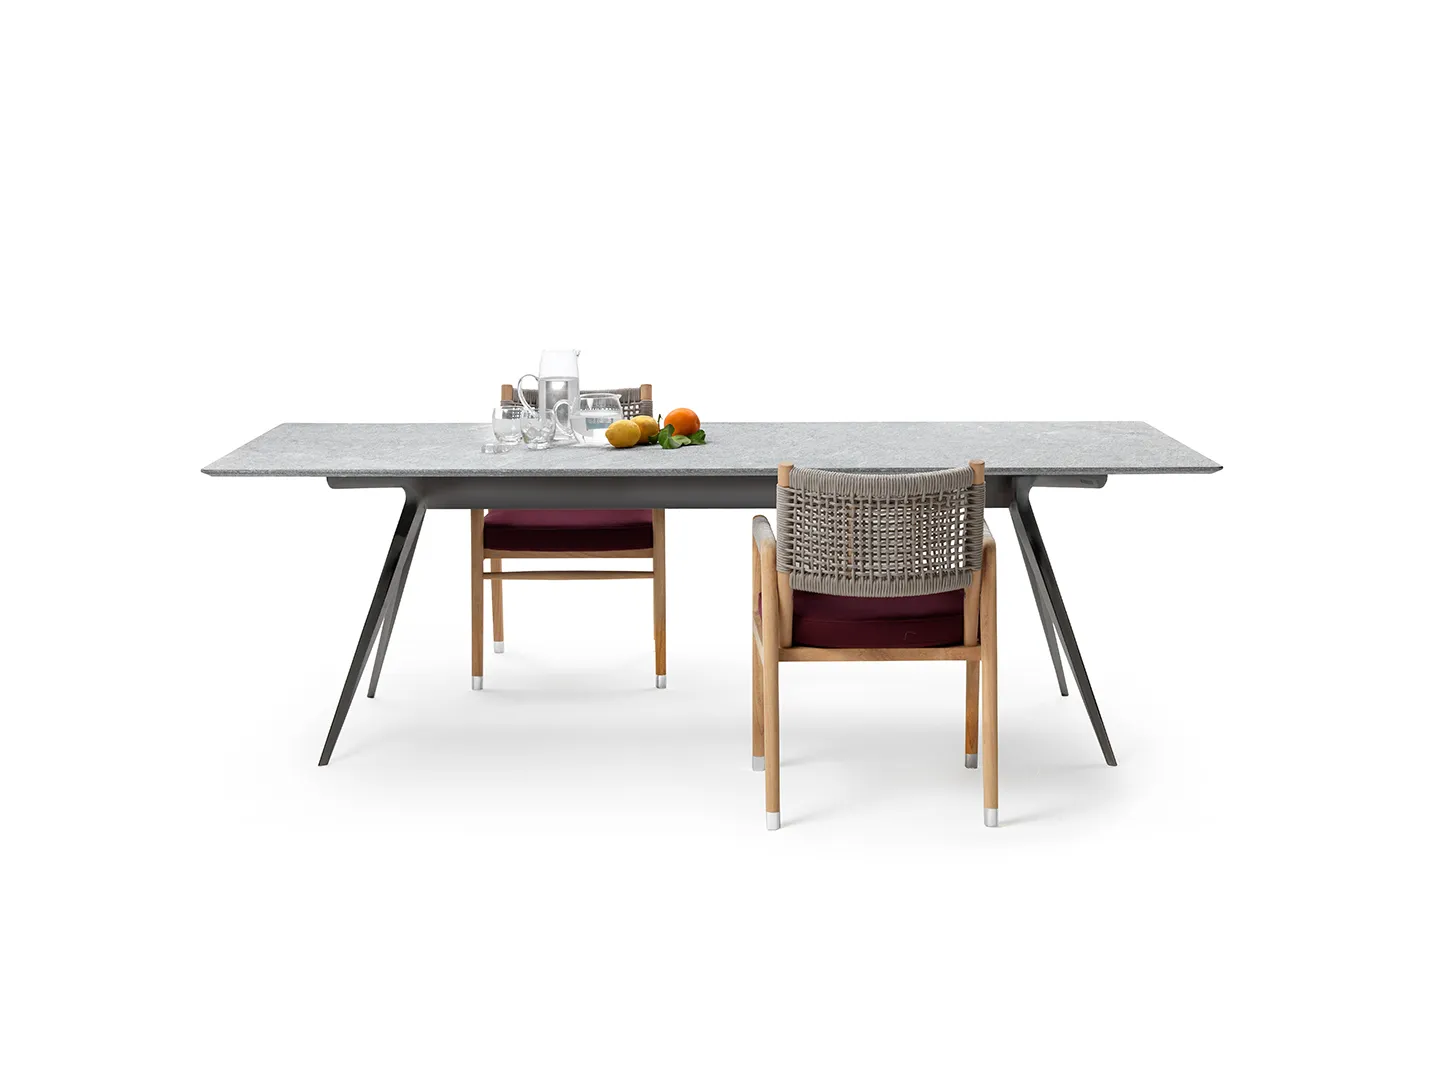 Zefiro Outdoor tavolo, Antonio Citterio design